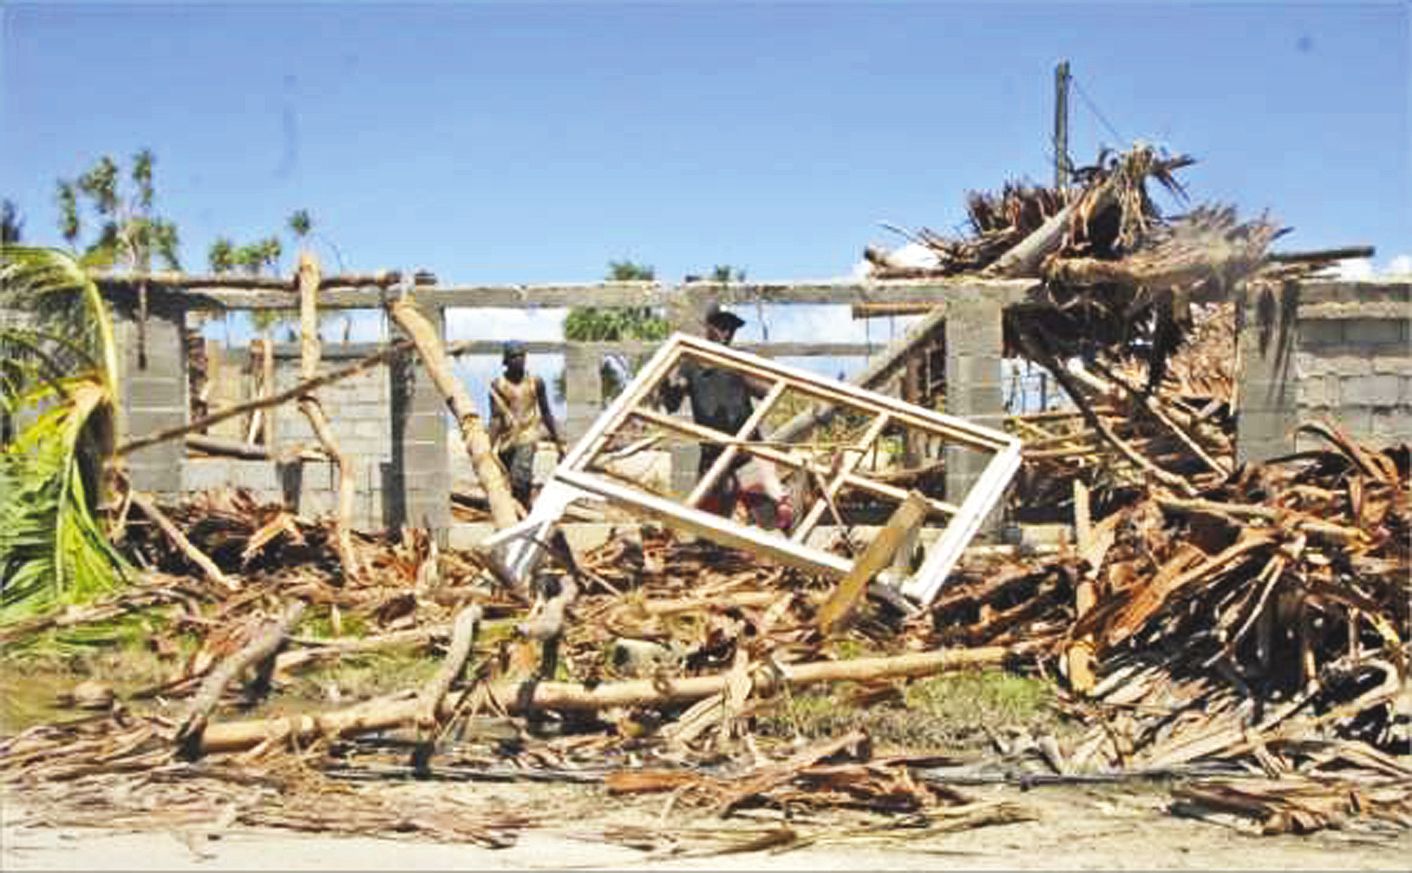 Le 17 mars 2015, quelques jours après le passage du cyclone Pam. L’heure était à la reconstruction. Port-Vila était dévasté.